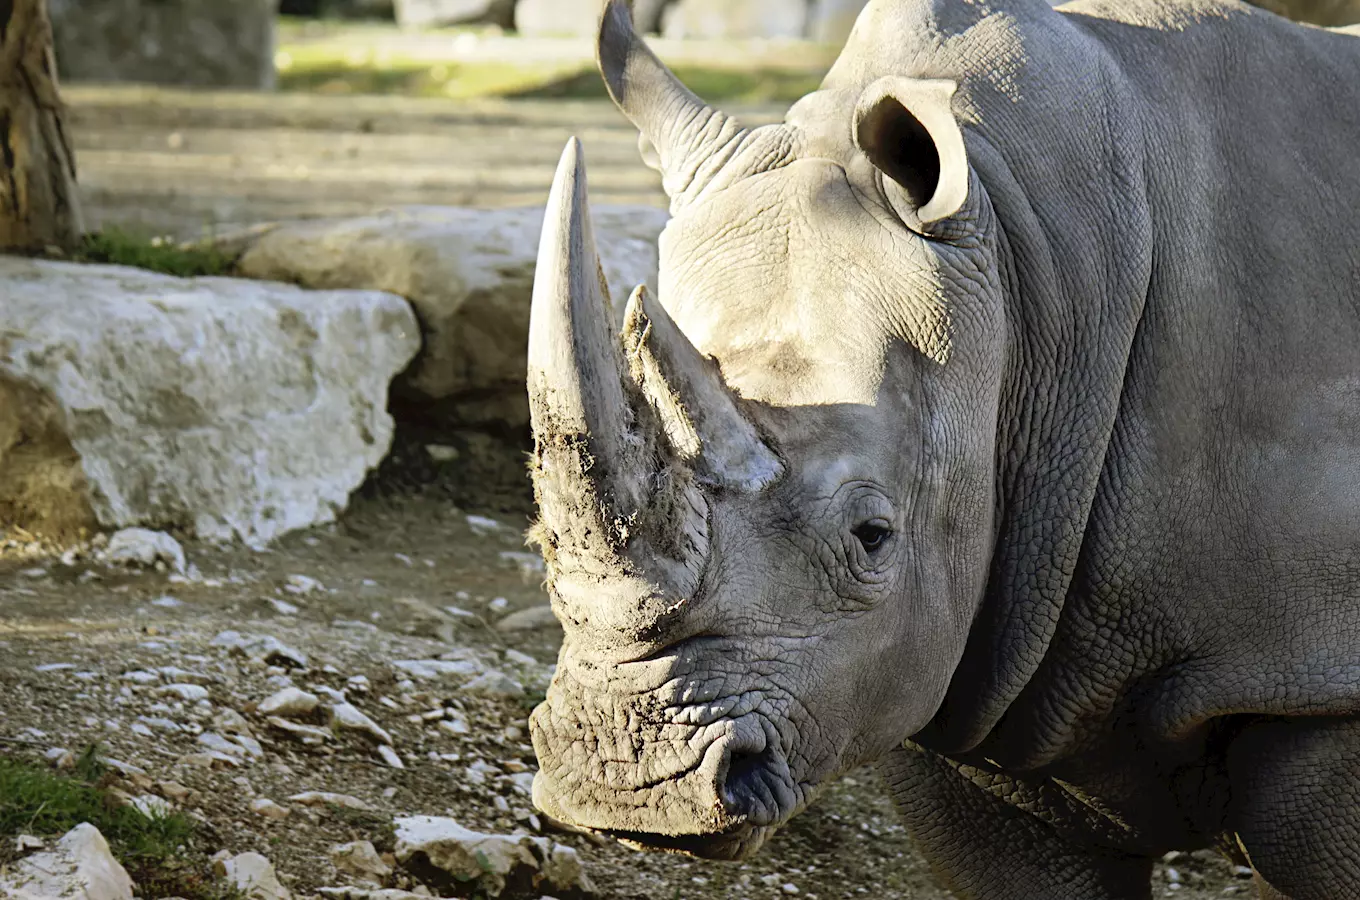 Cílem pálení je upozornit verejnost, že situace nosorožcu ve volné prírode je kritická